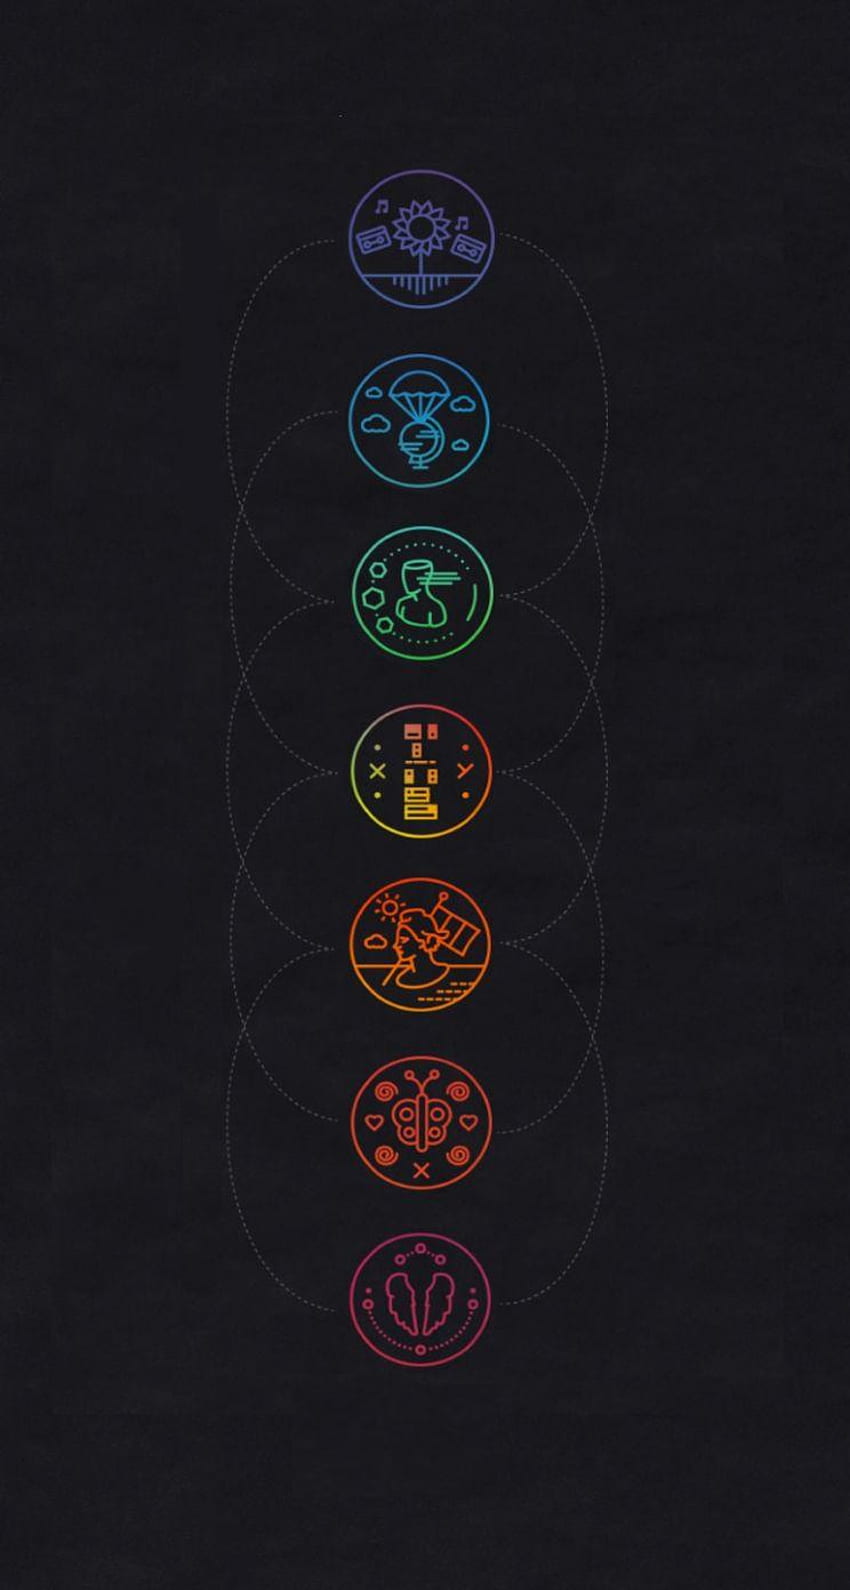 Coldplay Wallpaper - iXpap